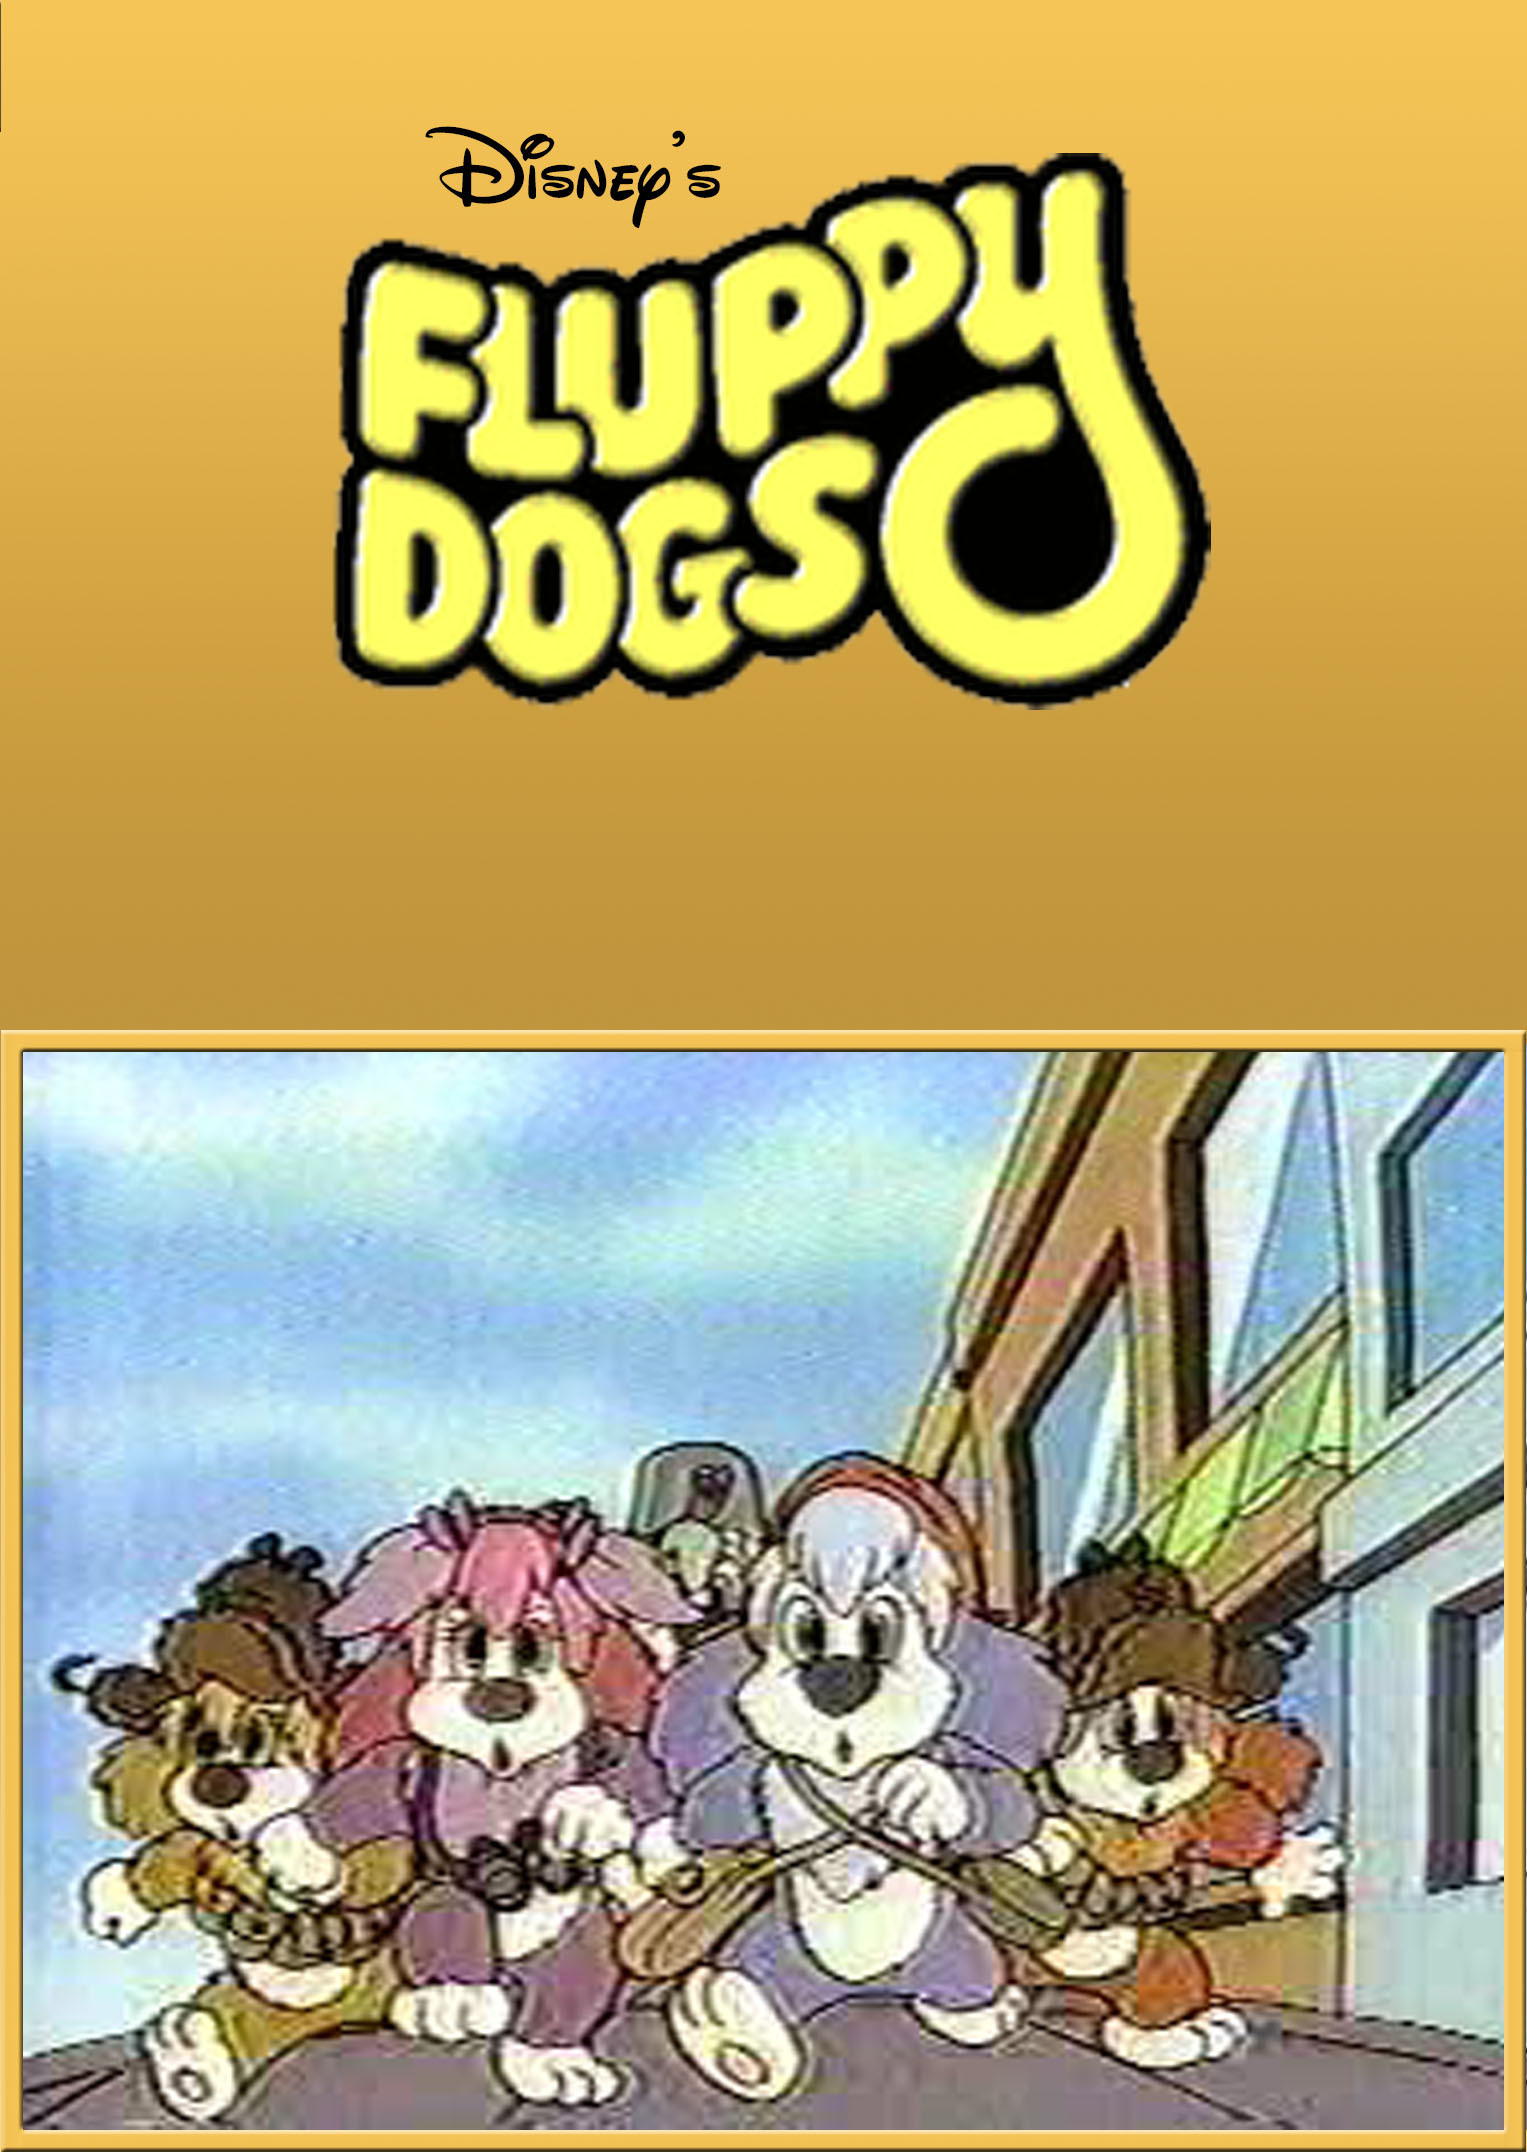 Fluppy Dogs (1986) Screenshot 4 